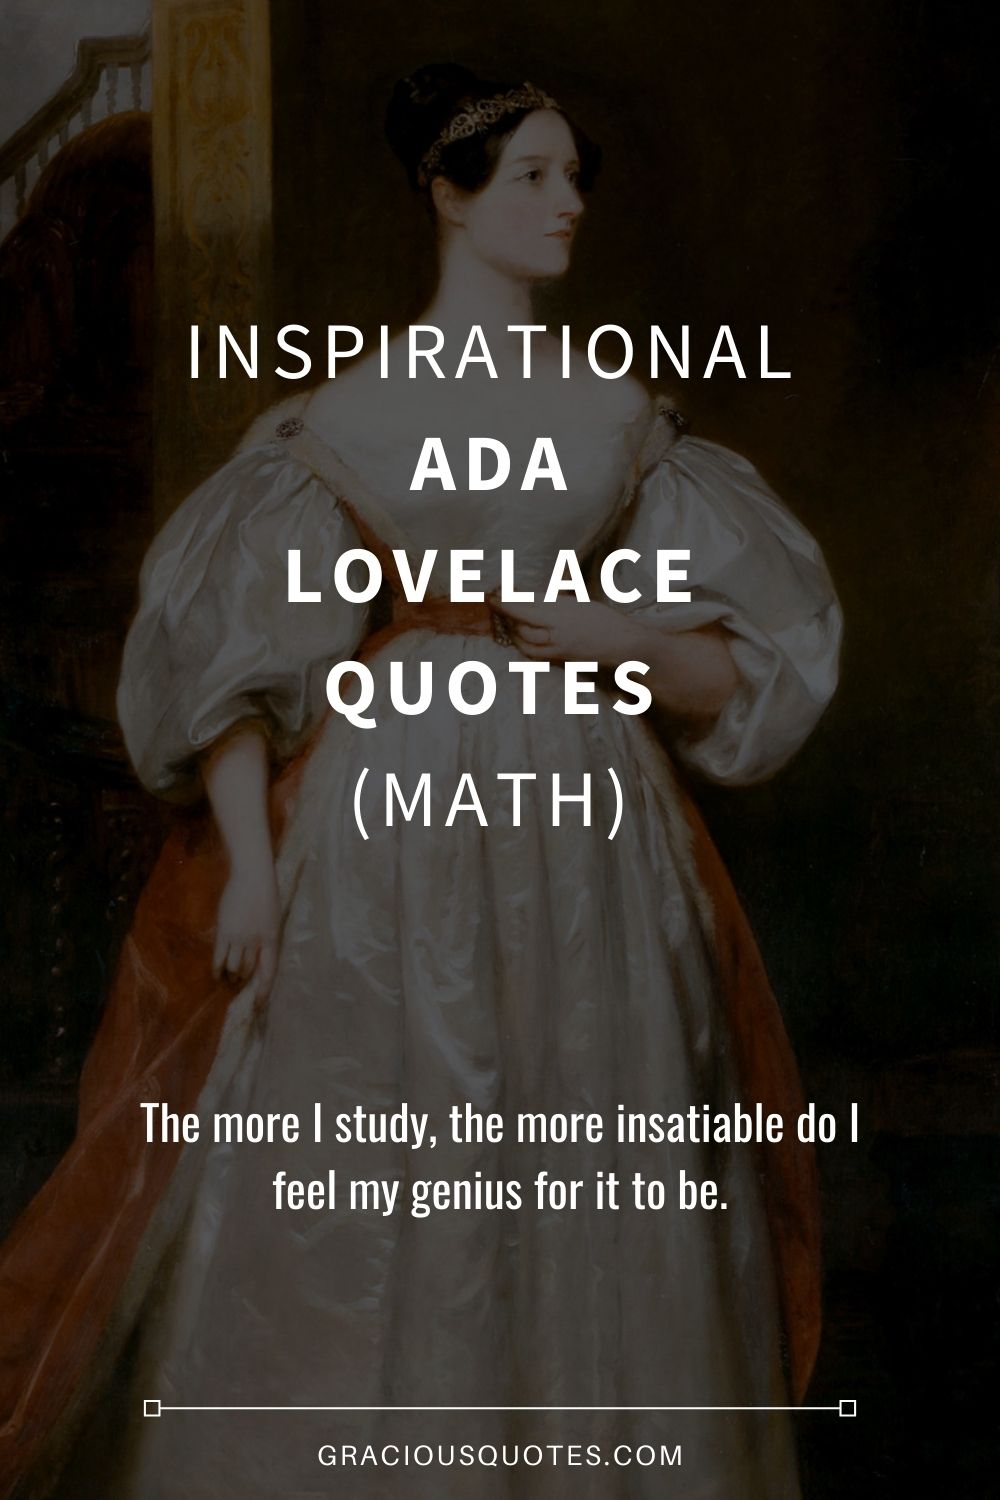 Inspirational Ada Lovelace Quotes (MATH) - Gracious Quotes